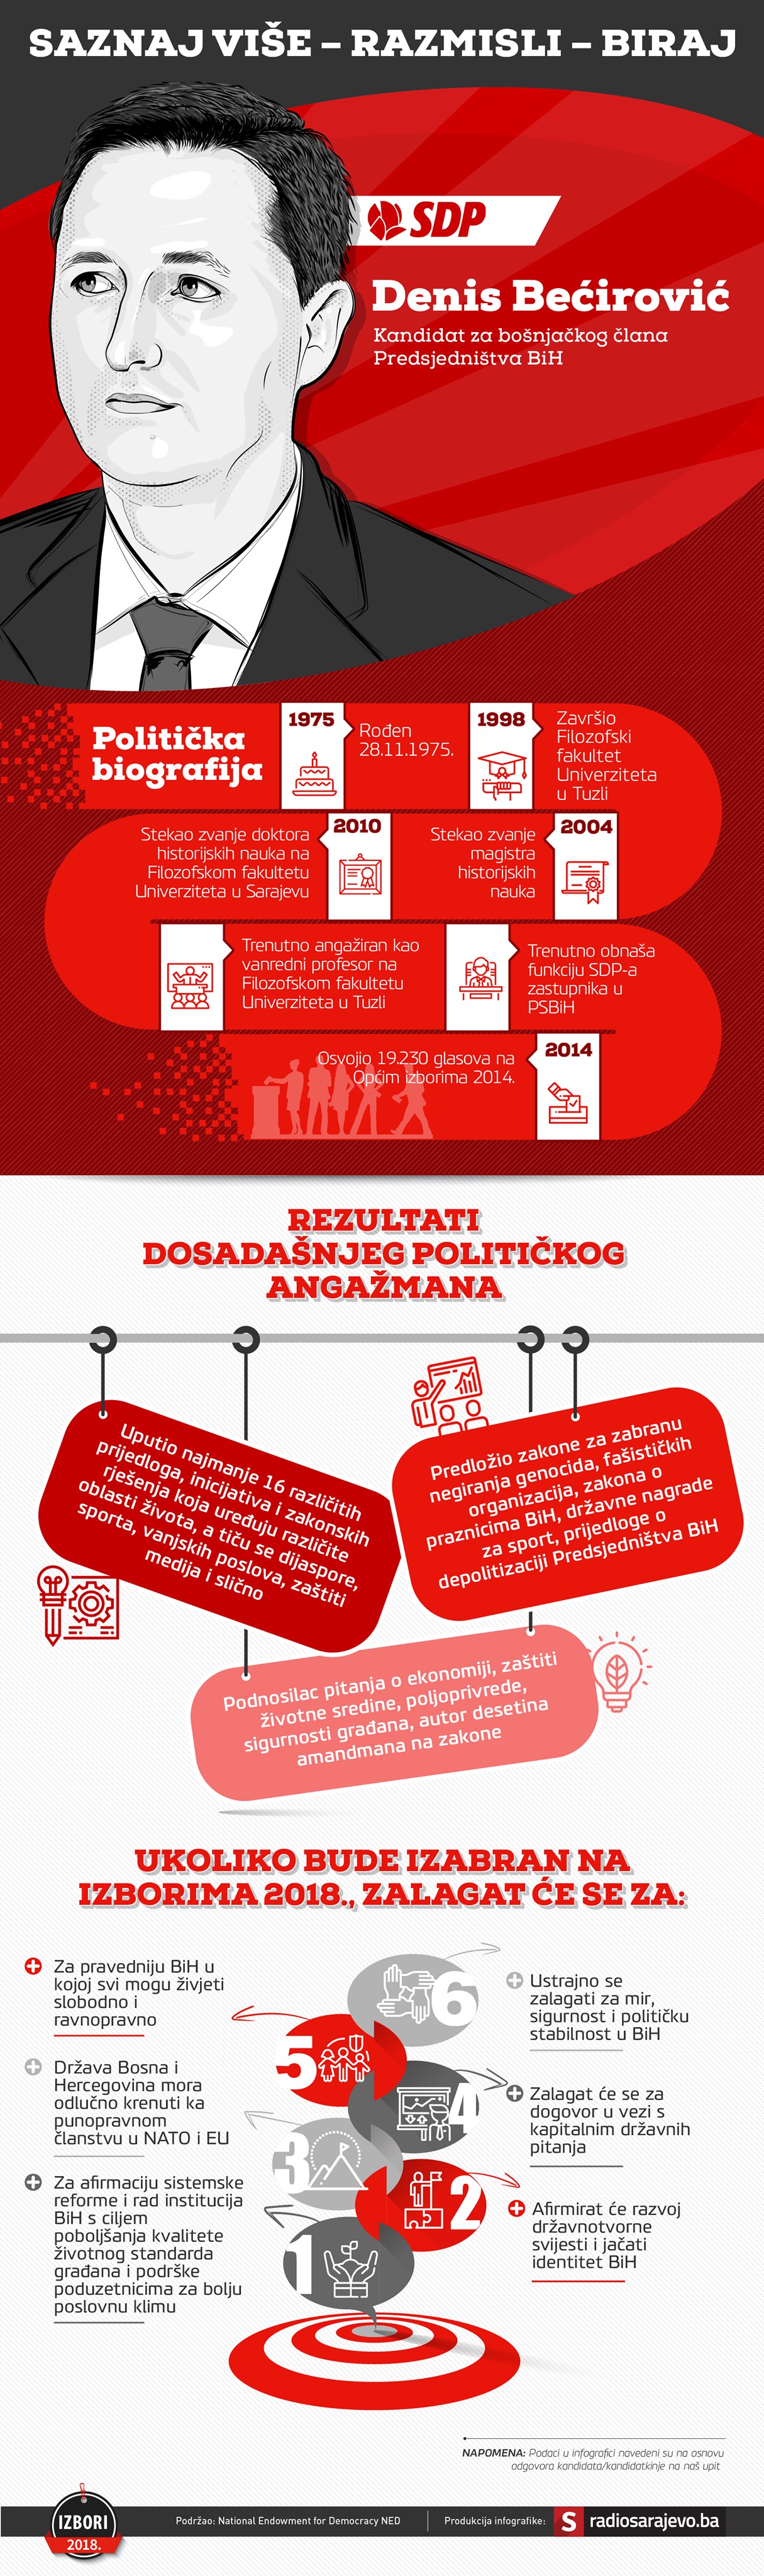 denis-becirovic-ispravka-politicka-infografika3.JPG - undefined